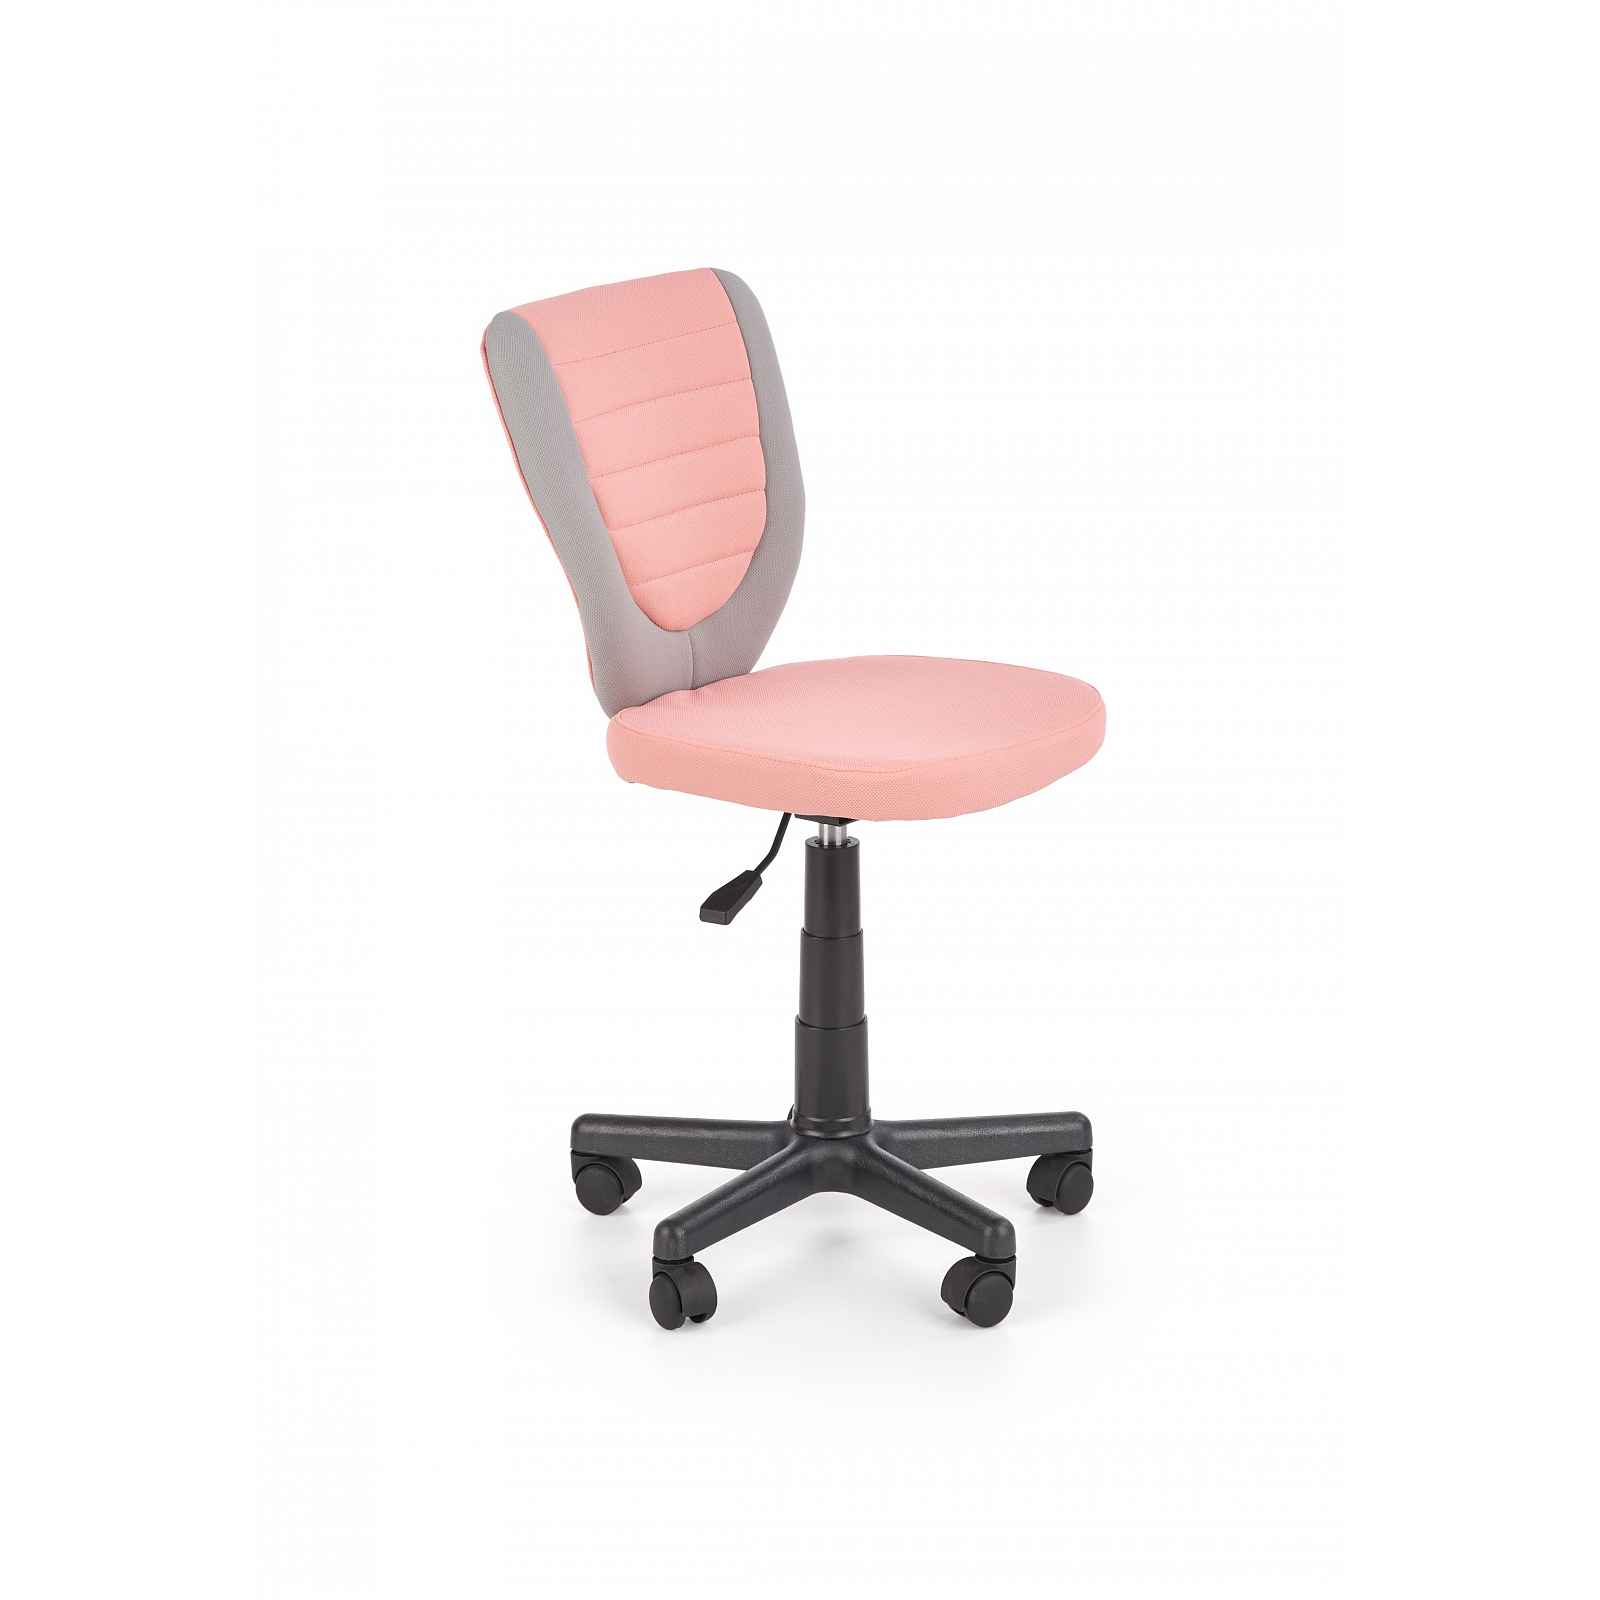 Dětská židle k psacímu stolu Hema1633, šedá/růžová HELCEL